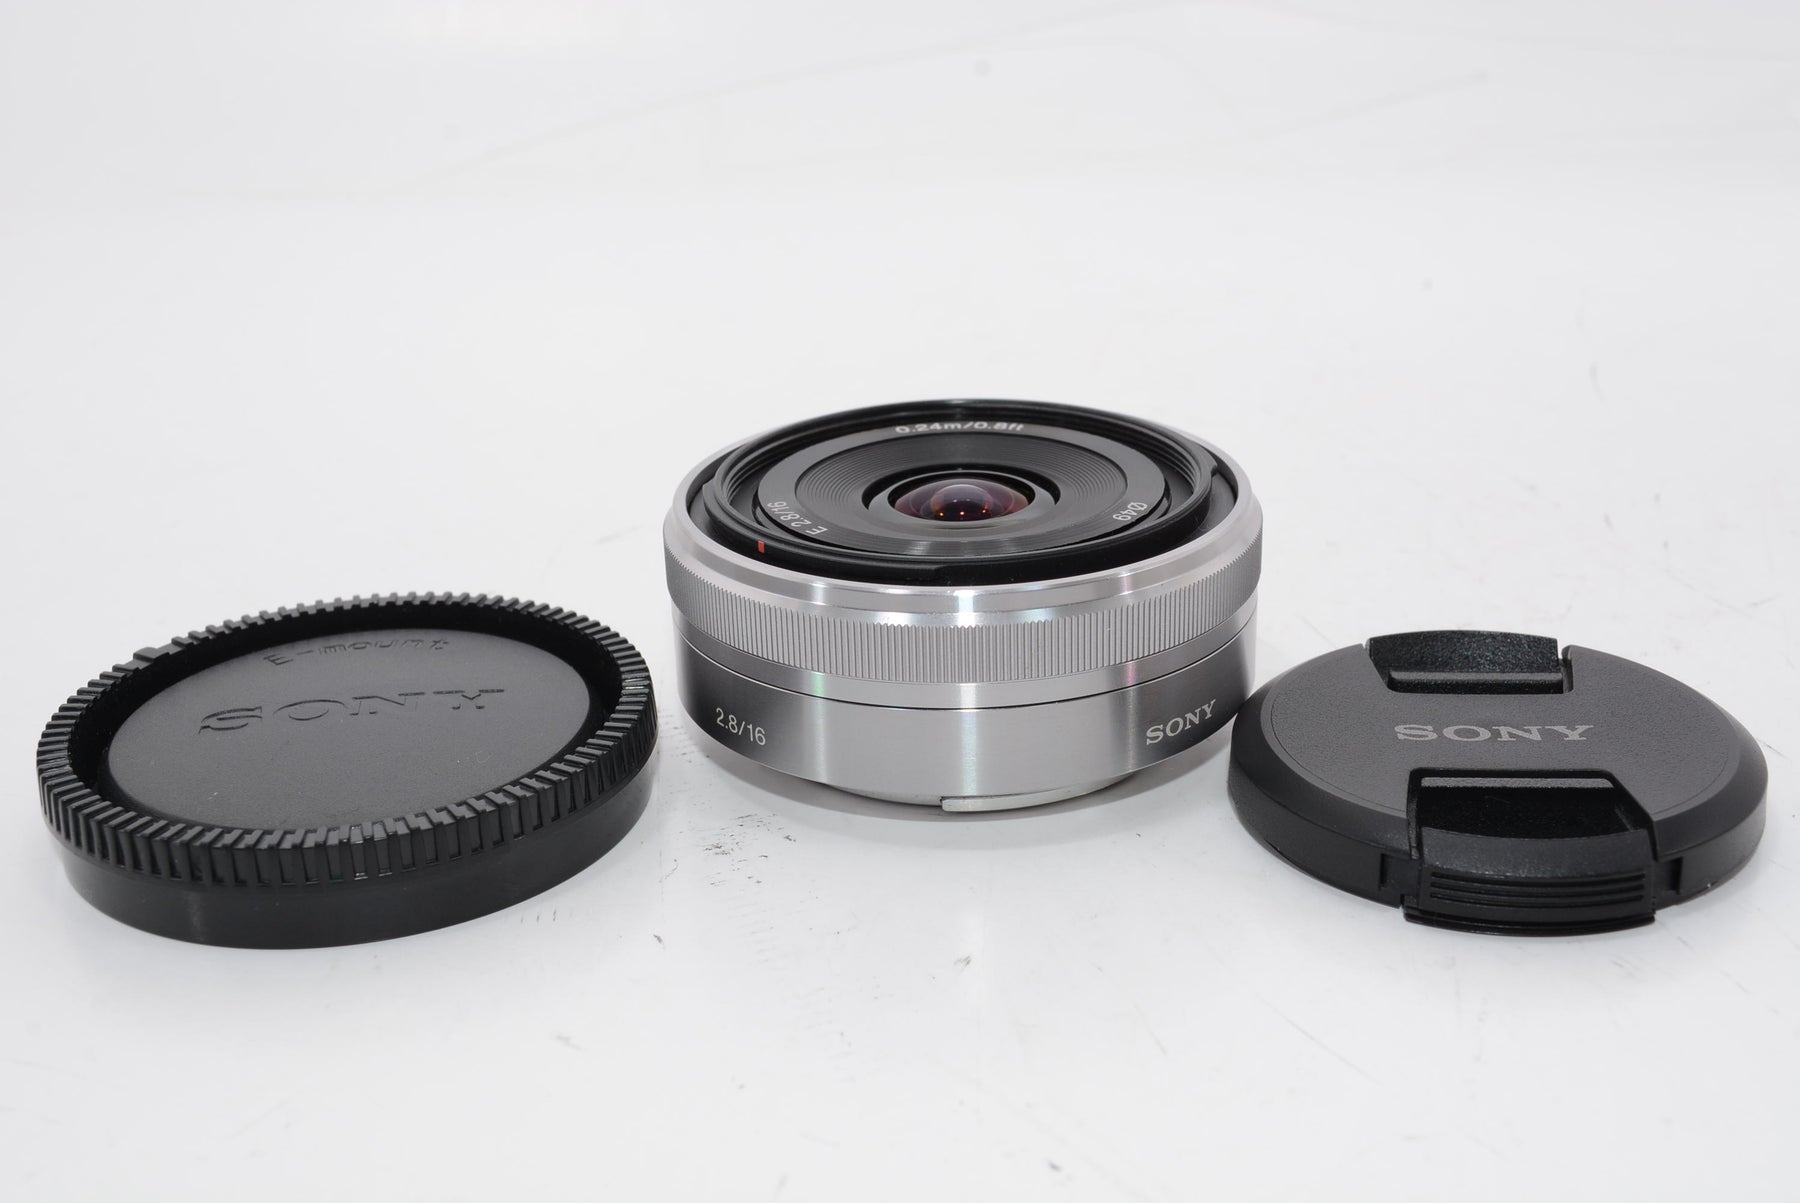 ソニー SONY E-mount レンズ16mm F2.8 SEL16F28-